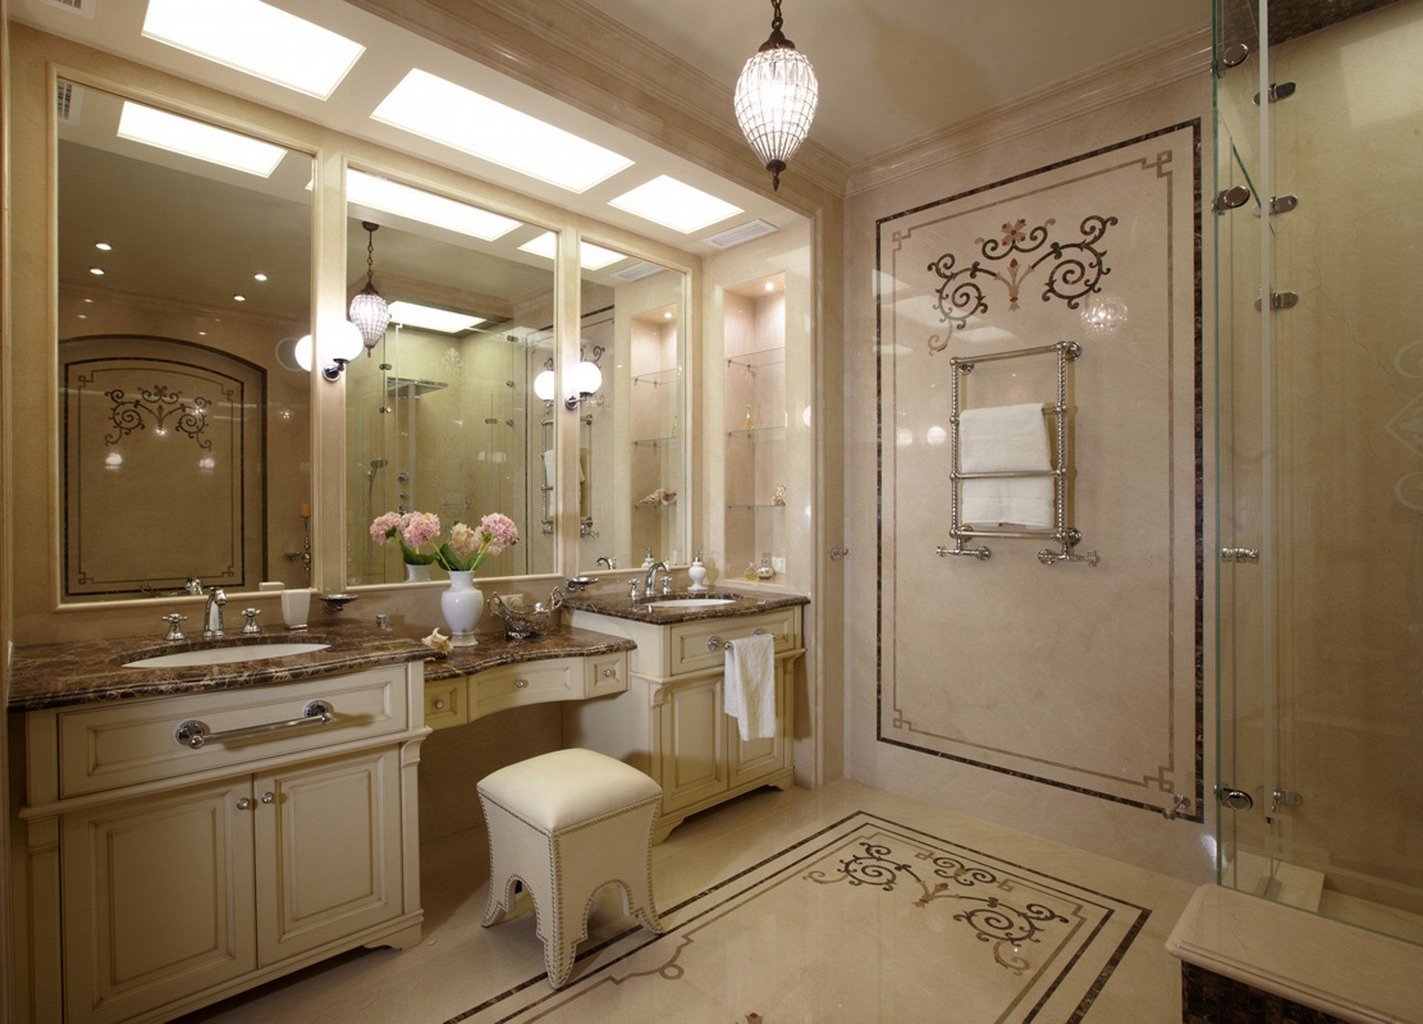 Ванная комната в классическом стиле - классический интерьер ванной (+фото)